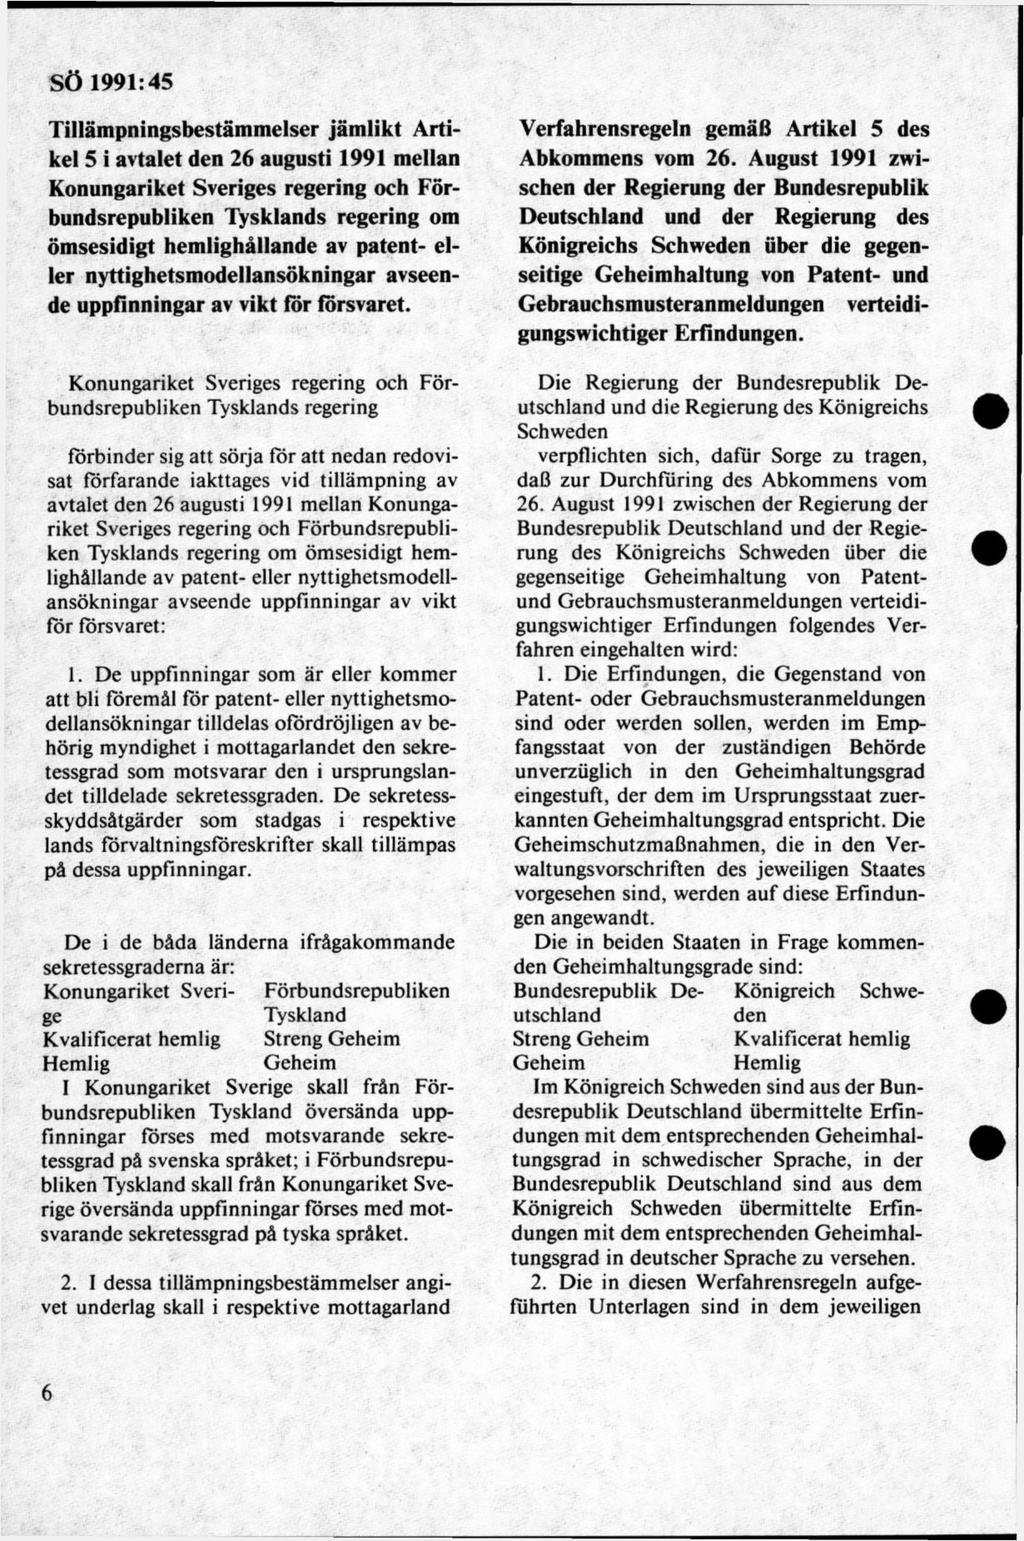 Tillämpningsbestämmelser jämlikt Artikel 5 i avtalet den 26 augusti 1991 mellan Konungariket Sveriges regering och Förbundsrepubliken Tysklands regering om öm sesidigt hemlighållande av patent- eller